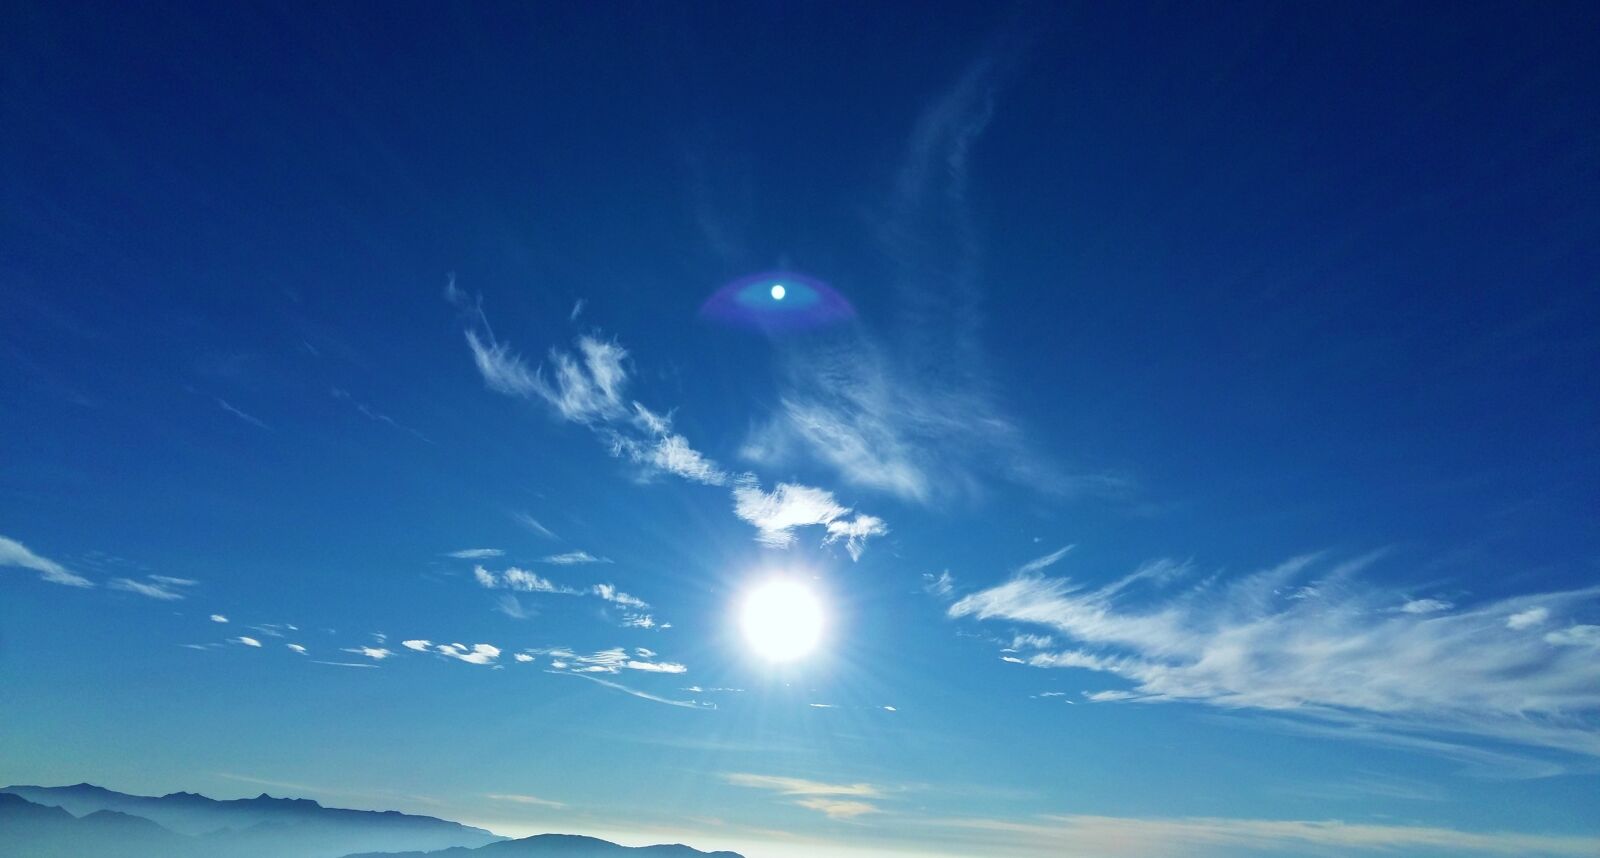 Samsung Galaxy A5 sample photo. Sun, rise, morning photography